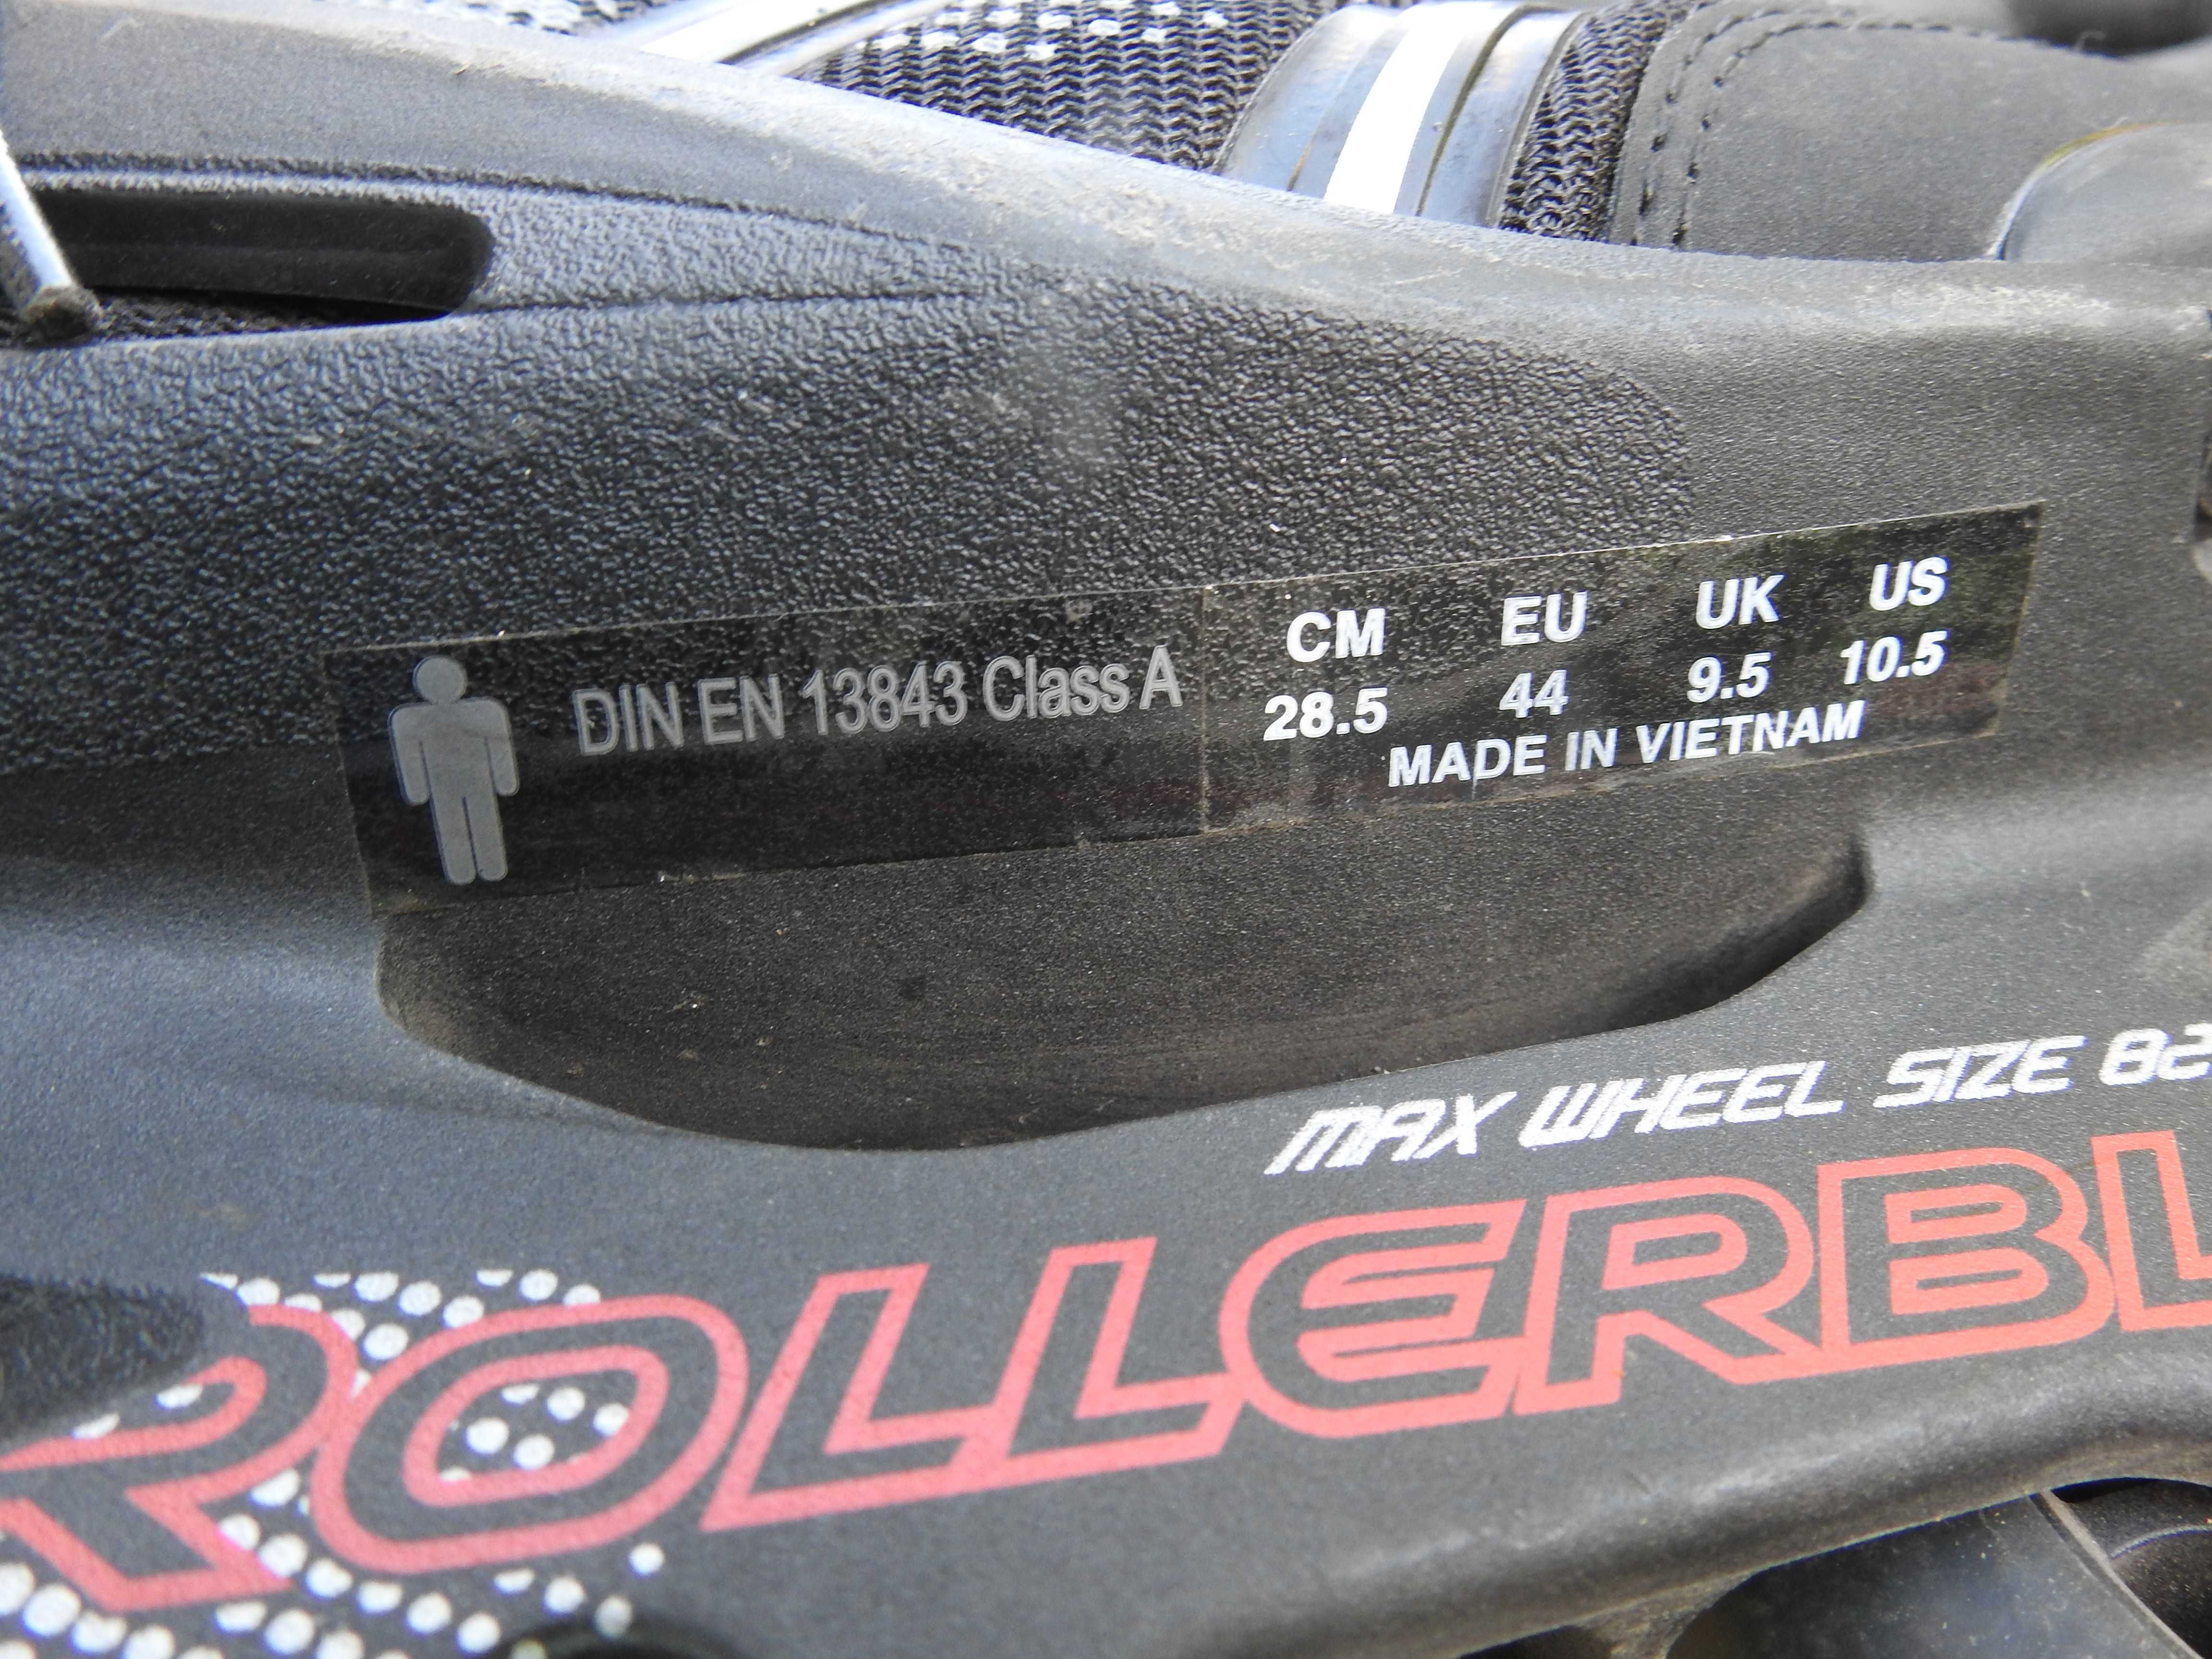 Rolki męskie Rollerblade rozmiar EU 44, 28,5 cm,